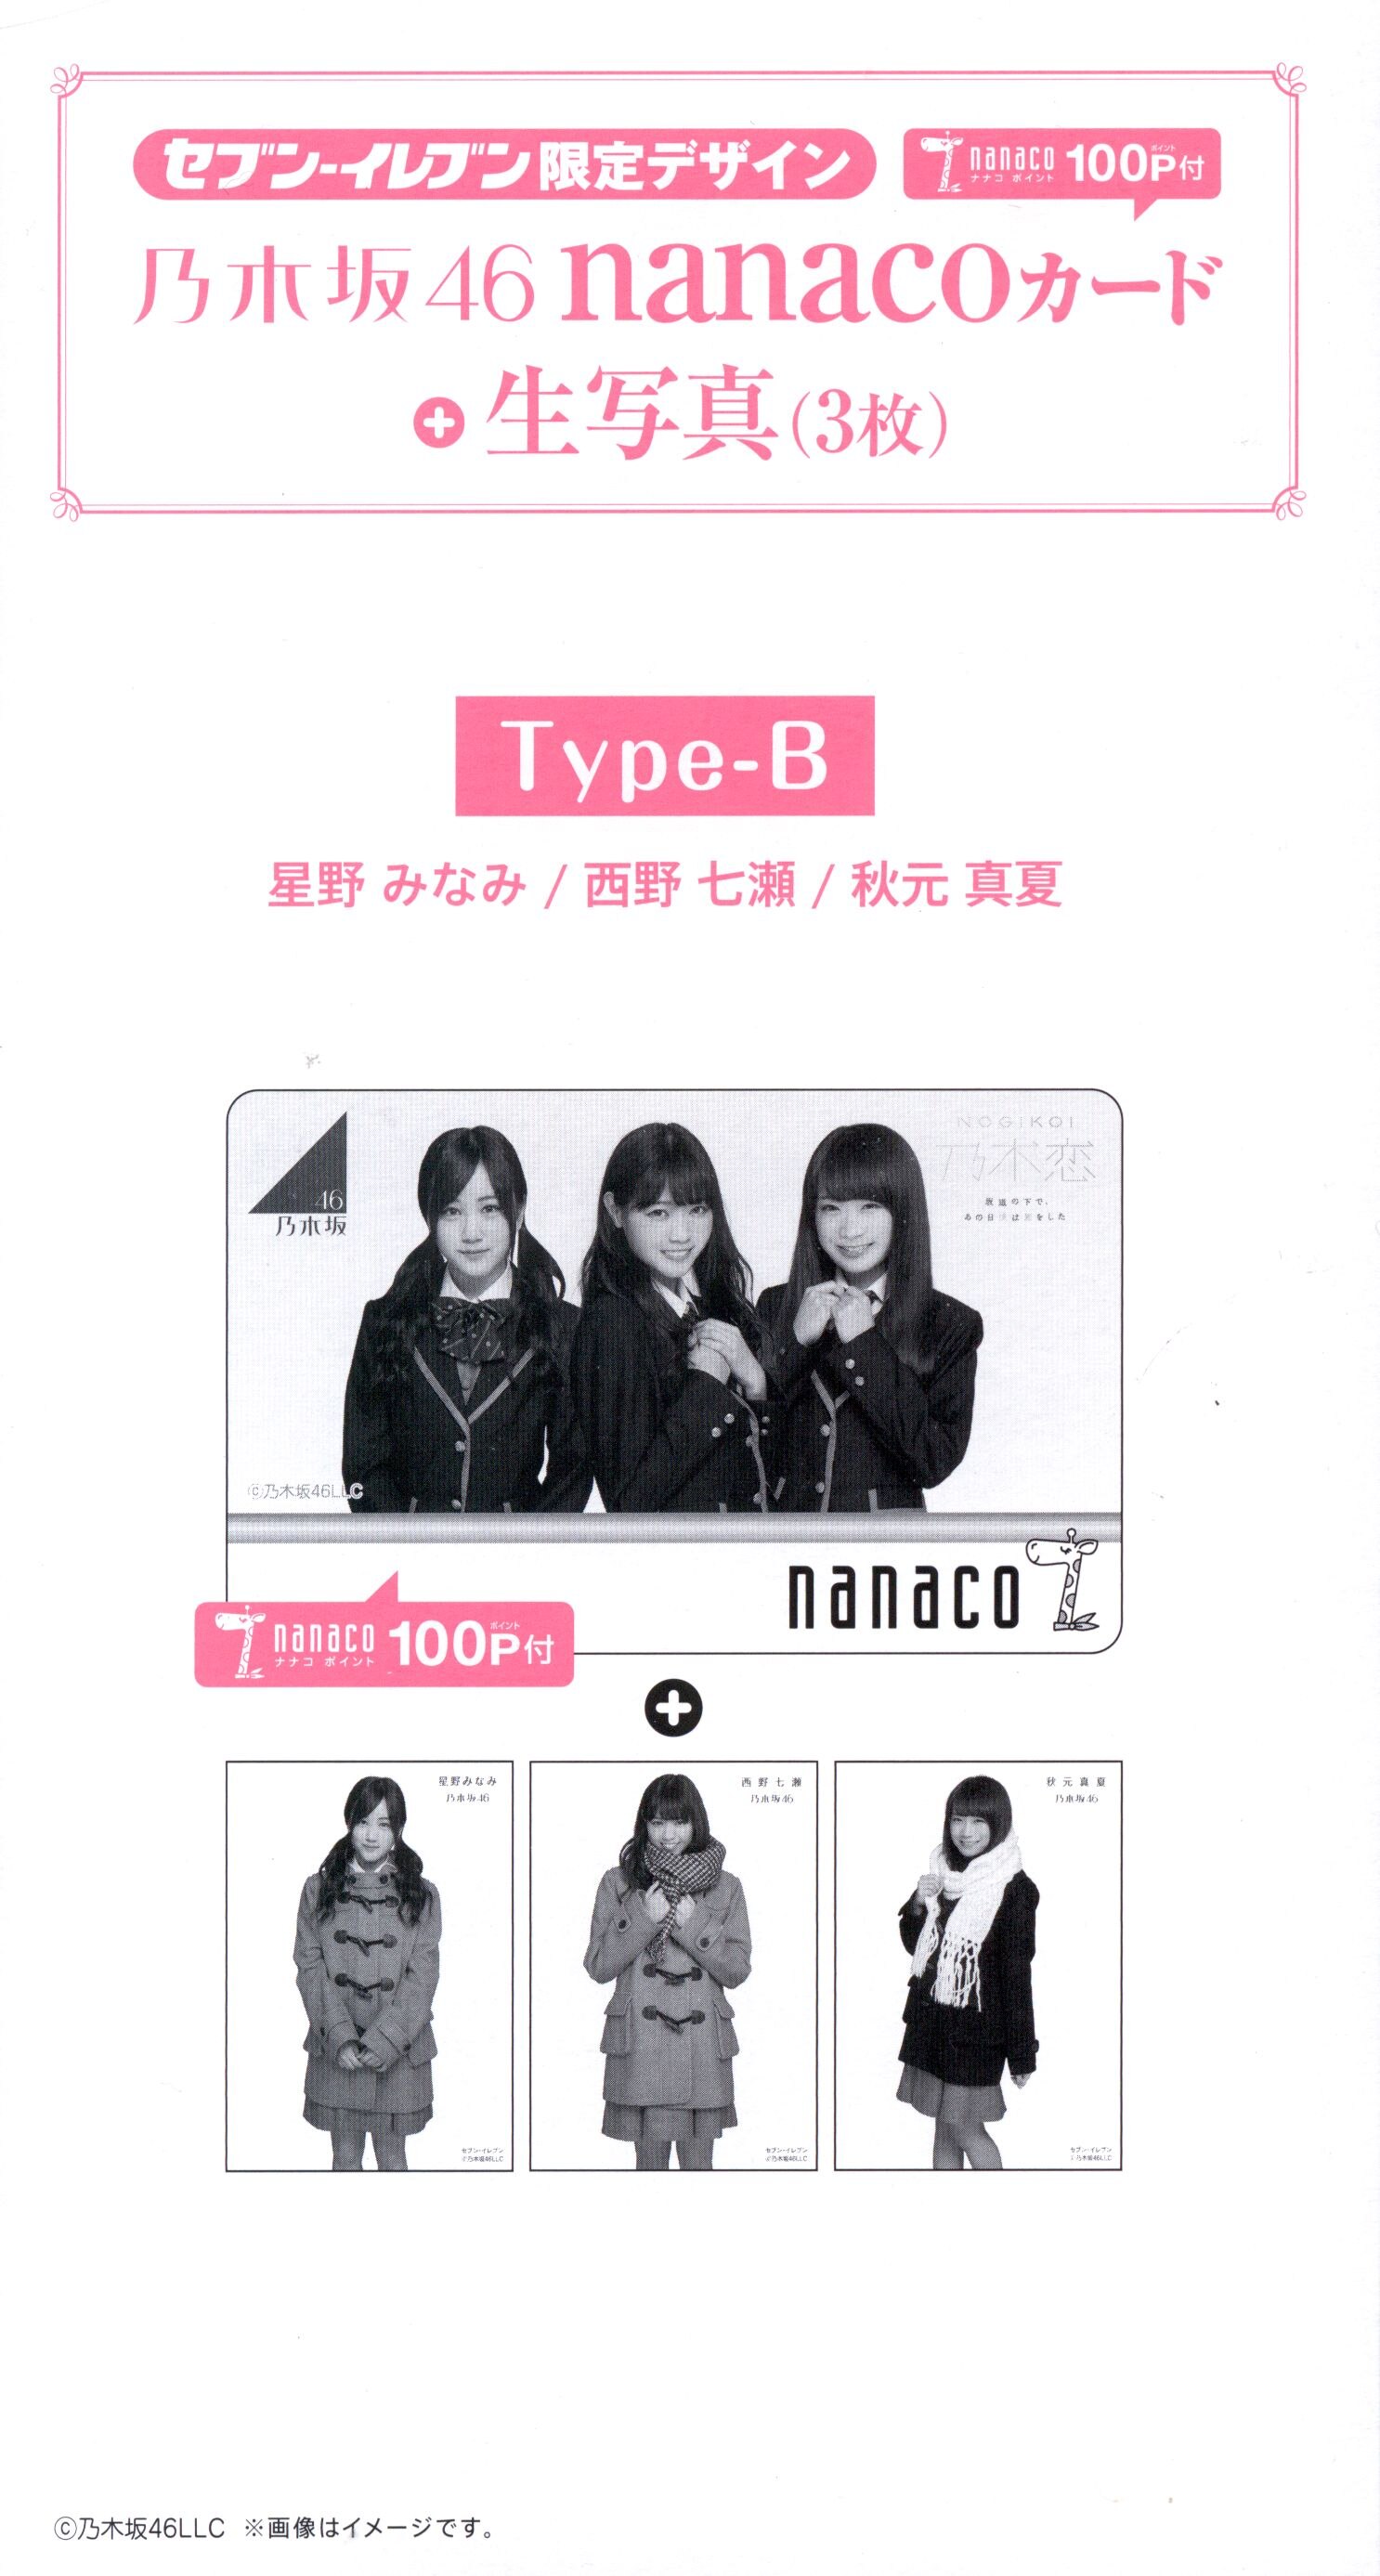 乃木坂46 nanacoカード - 女性アイドル